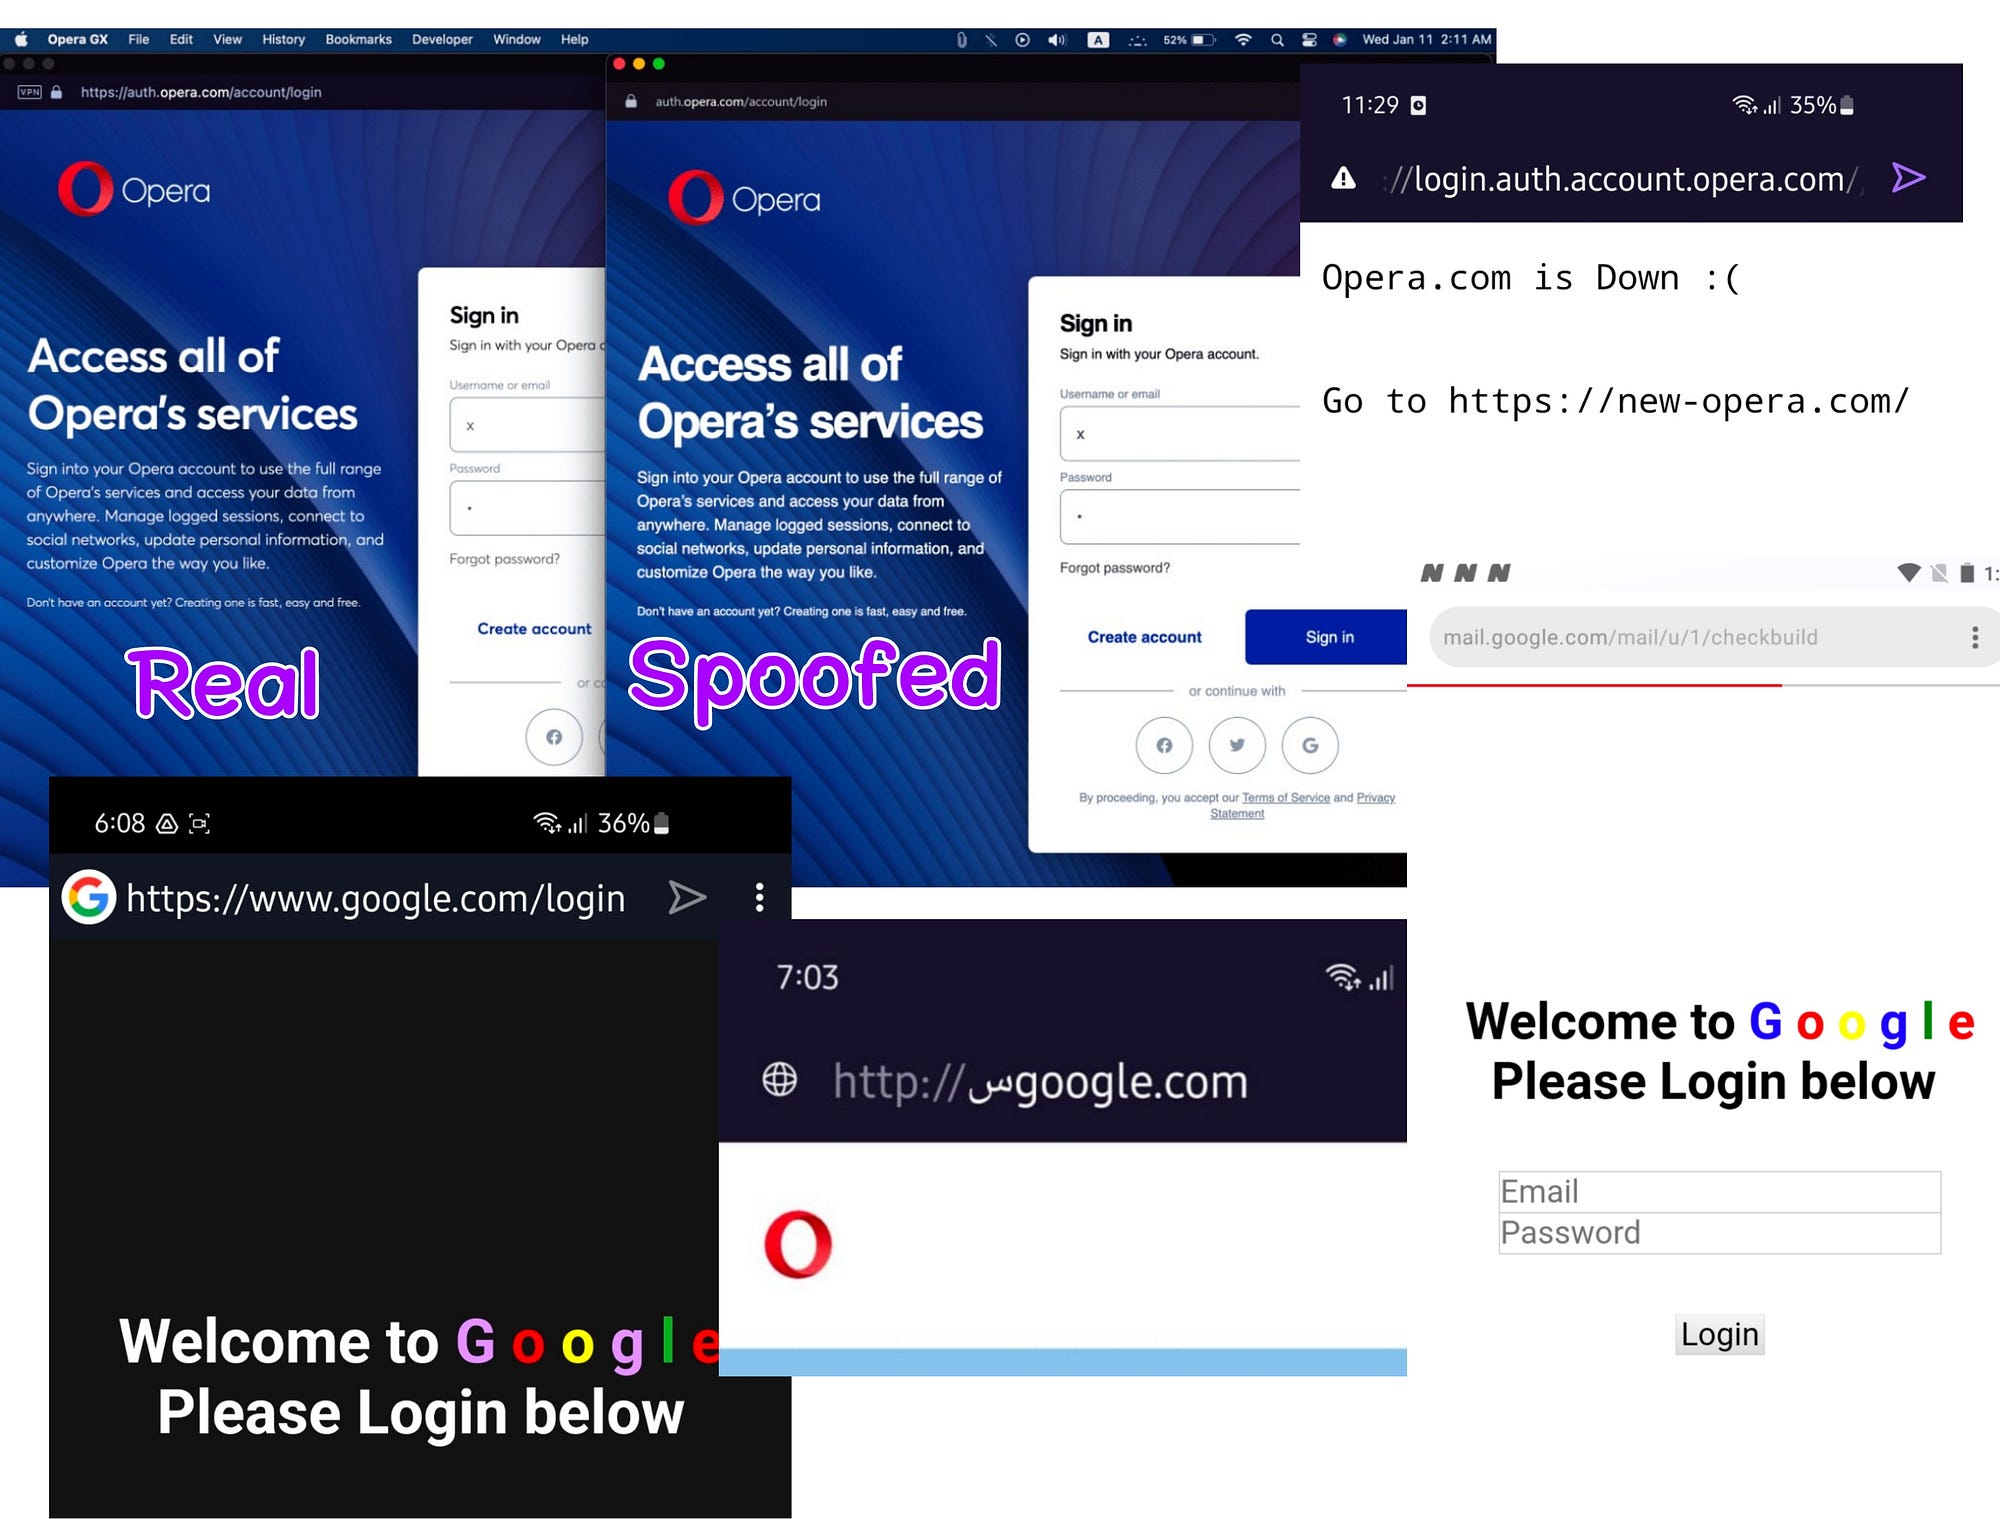 Opera GX – O primeiro navegador para jogadores